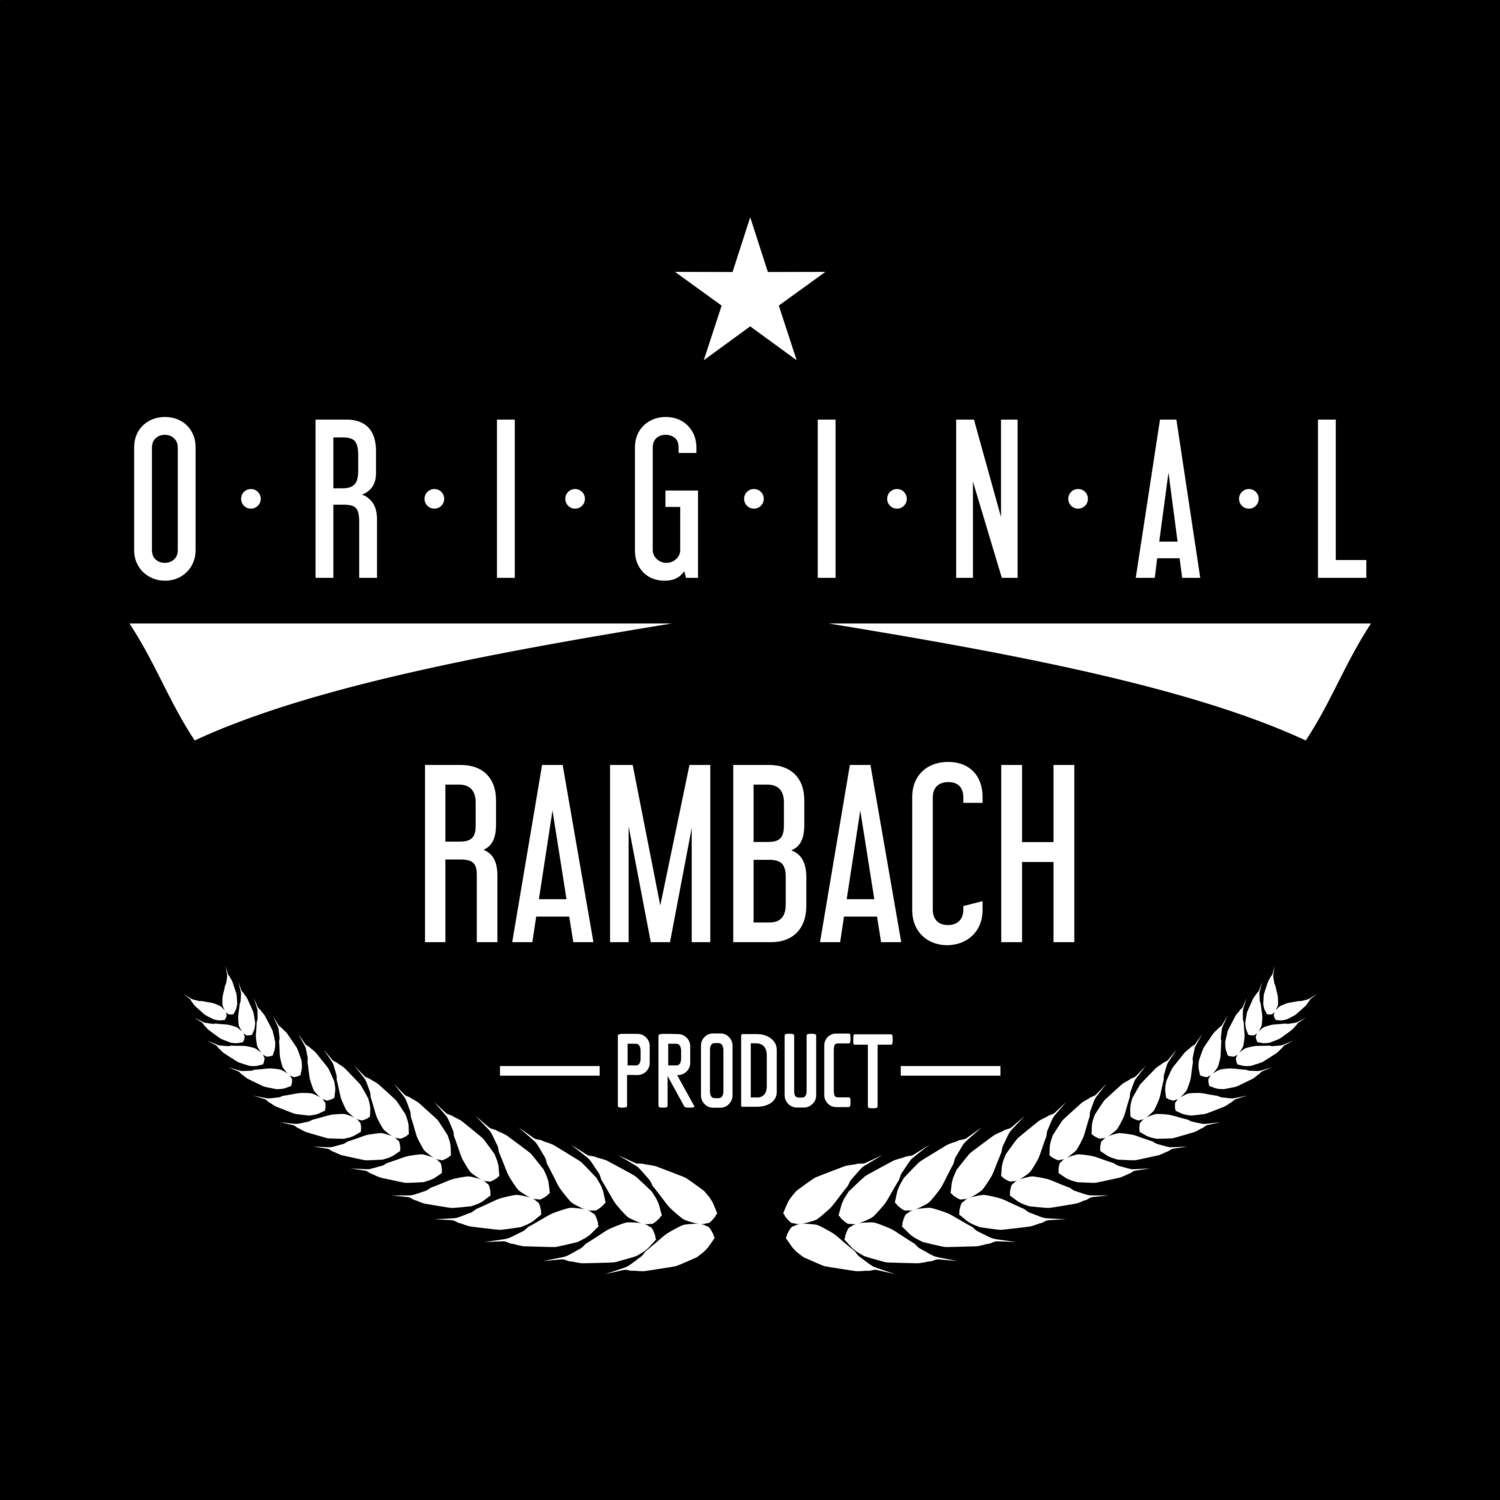 Rambach T-Shirt »Original Product«